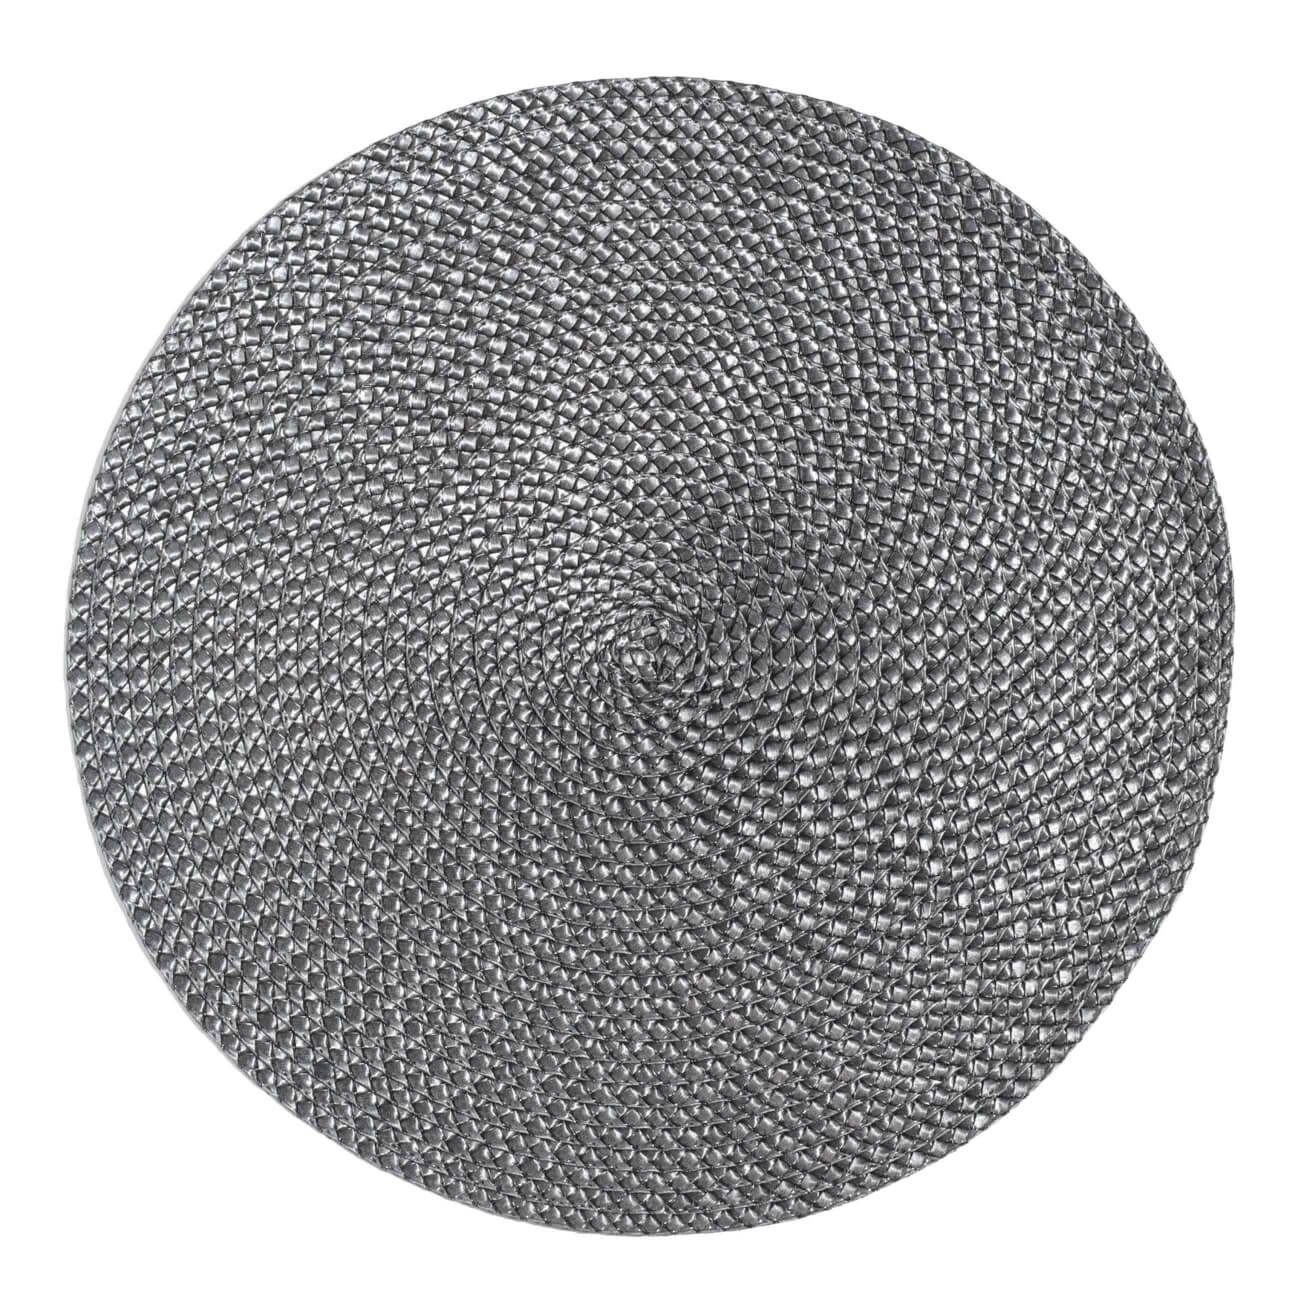 Салфетка под приборы, 38 см, полипропилен/ПЭТ, круглая, темно-серая, Circle braid изображение № 1